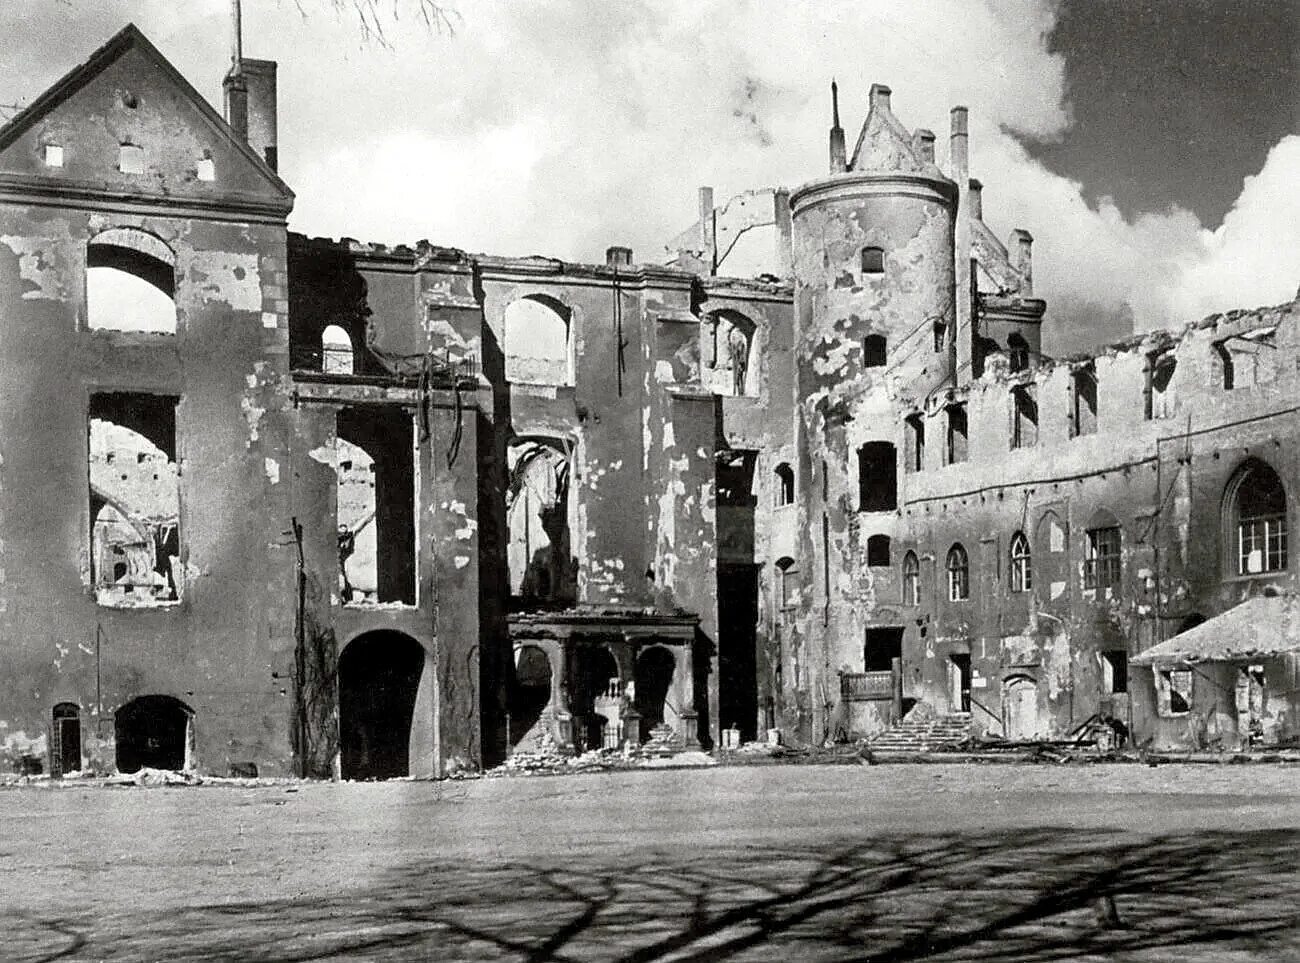 Осень 1944 года. Кенигсберг 1944. Королевский замок Калининград после войны. Замки, разрушенные бомбежками в 1944 году в Калининграде. Кёнигсберг Королевский замок 1944 год.